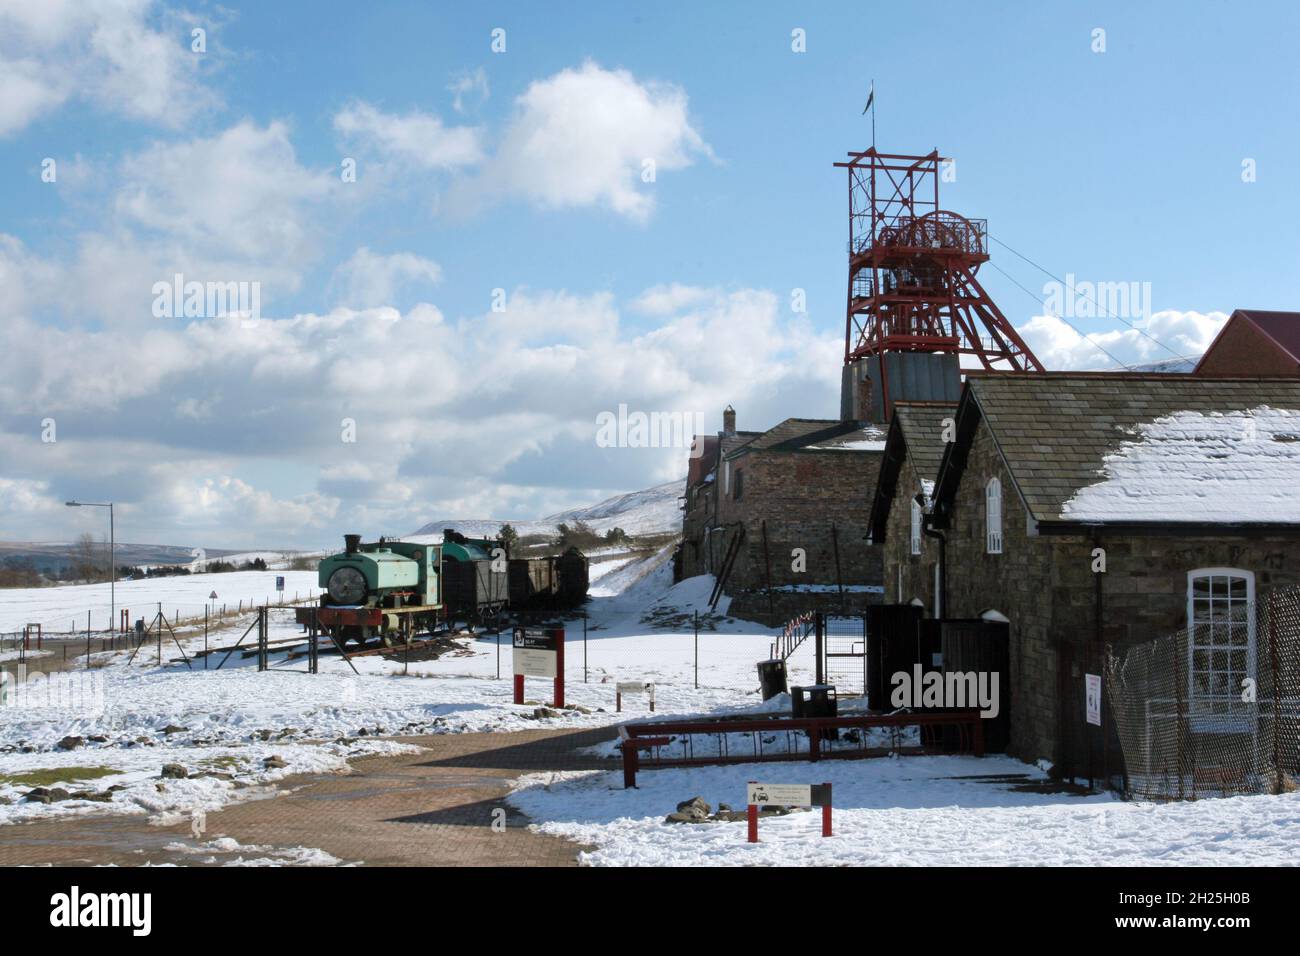 Big Pit, musée de l'exploitation minière, train à vapeur et wagons enroulement bâtiments engrenage bleu ciel bleu ciel blanc moelleux nuages hiver neige Blaenafon Wales UK Copy space Banque D'Images